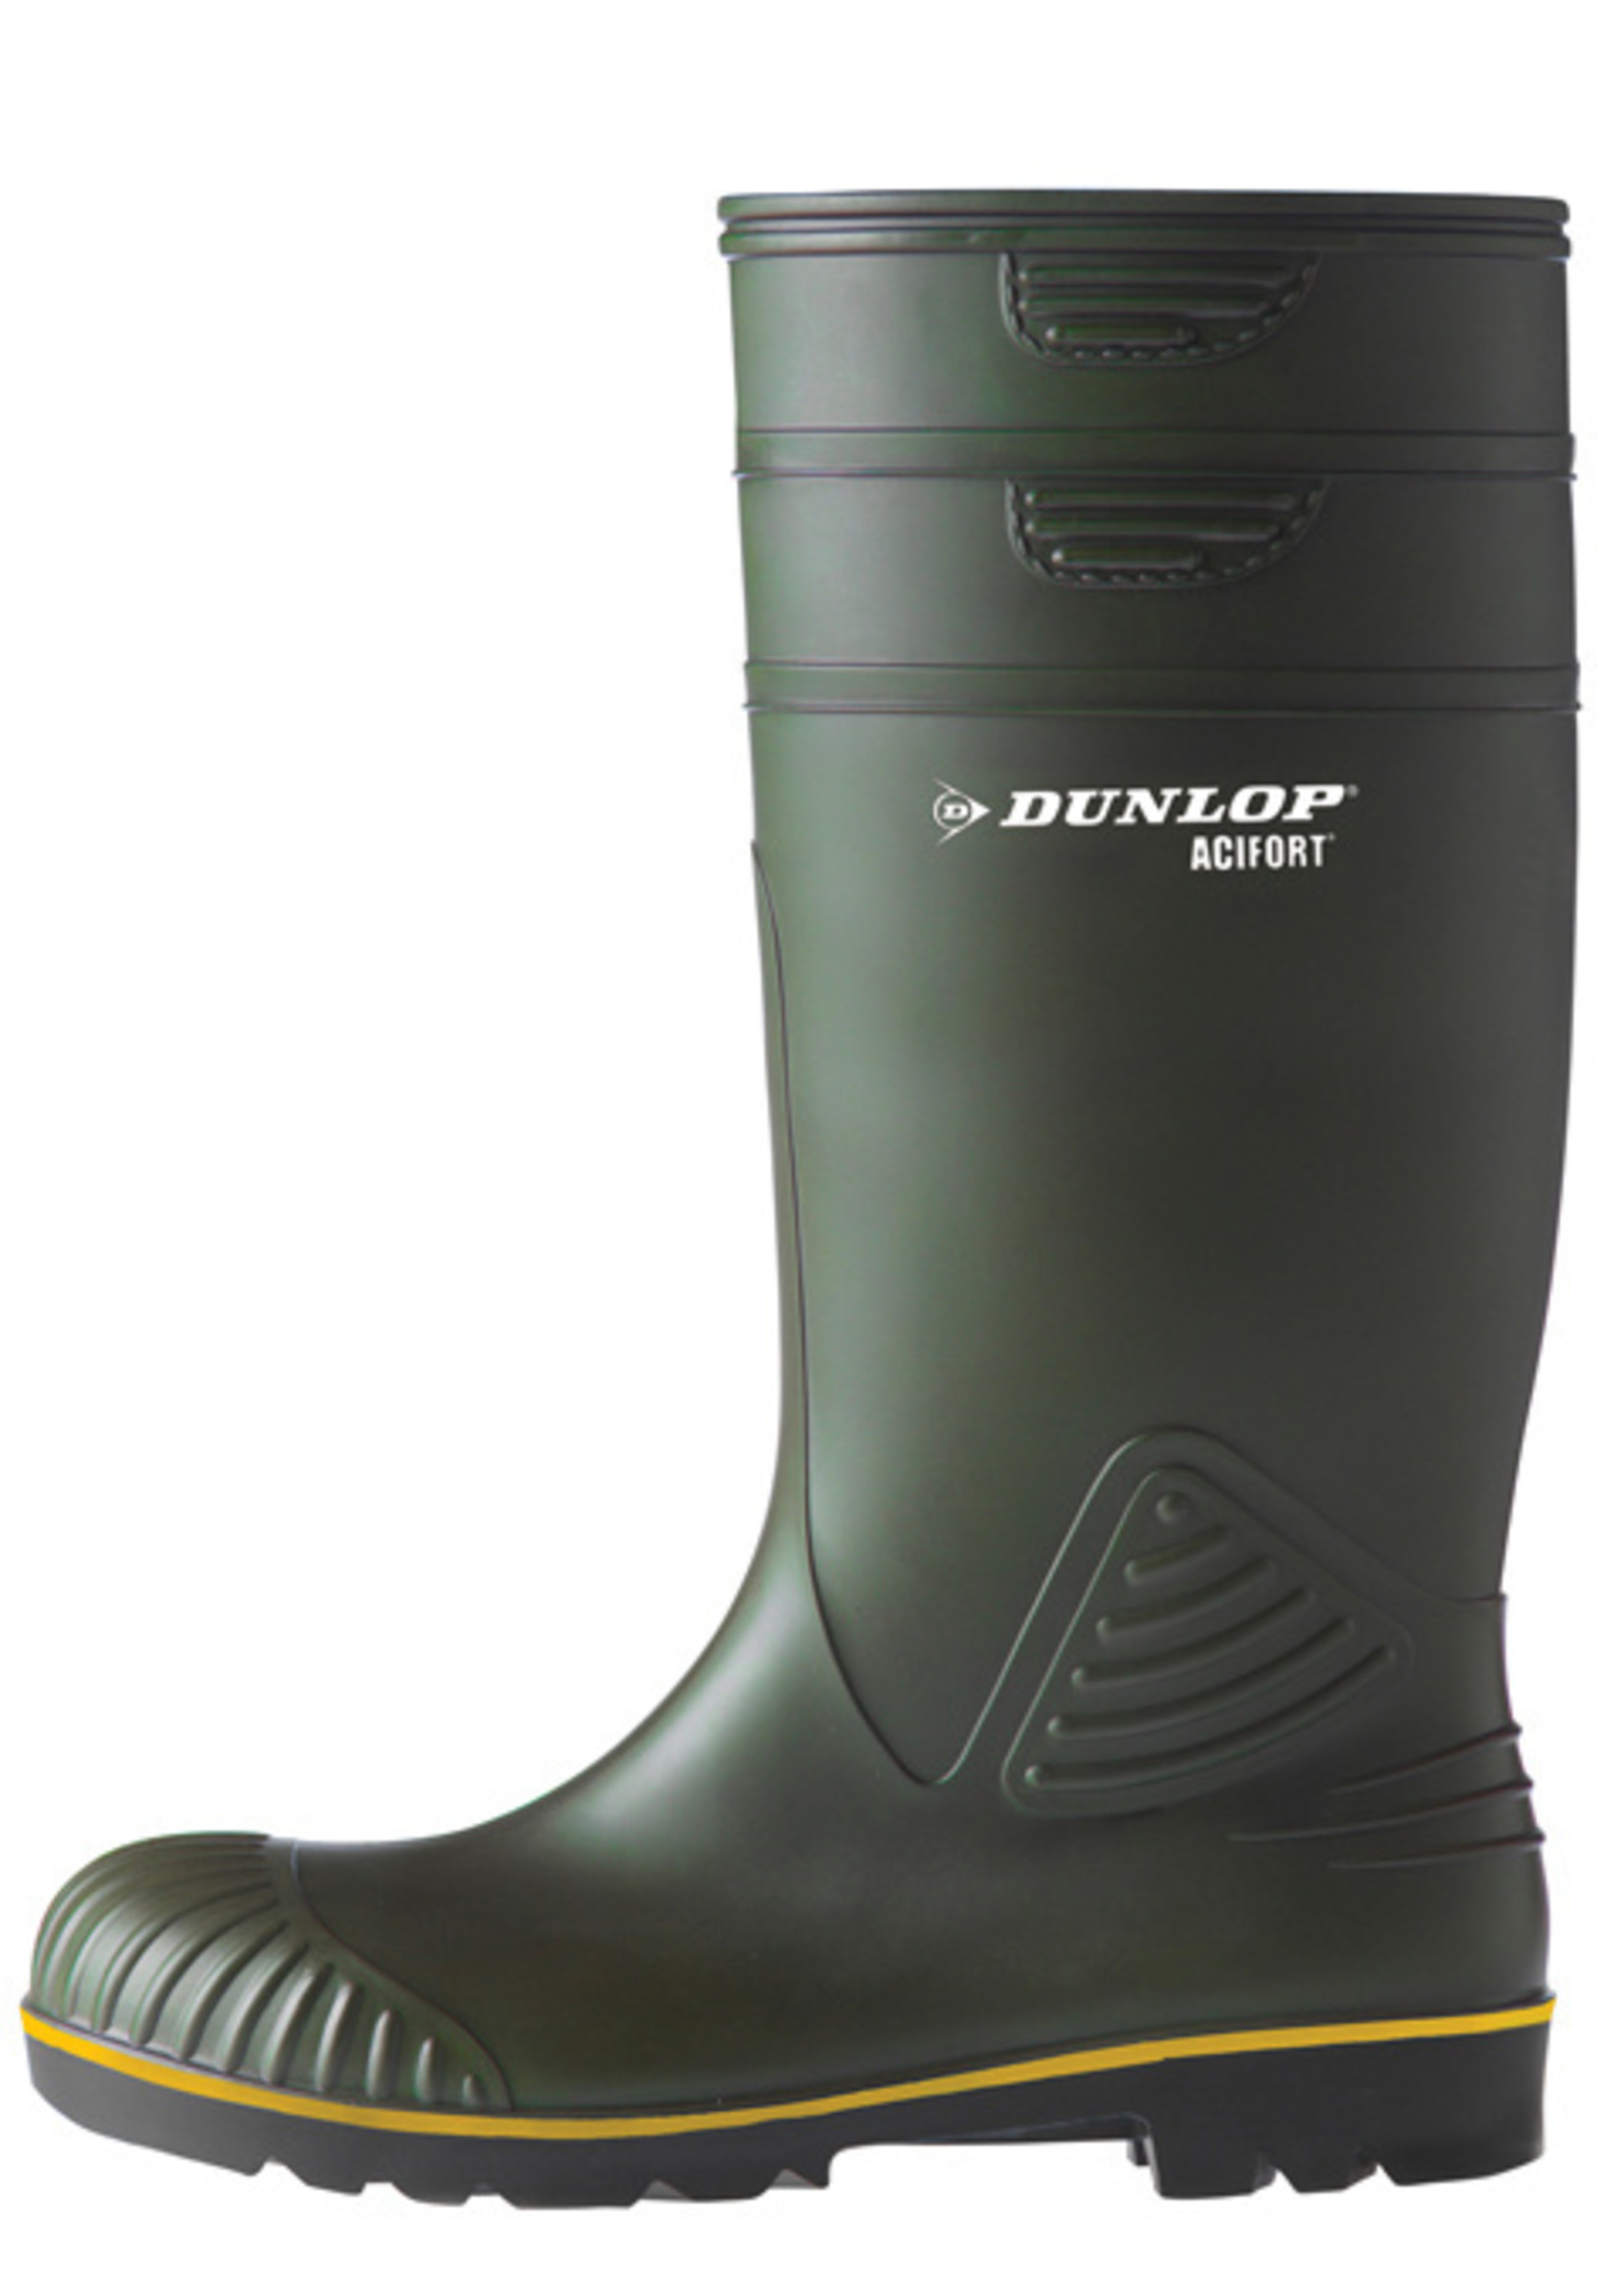 Dunlop Dunlop acifort knielaars groen